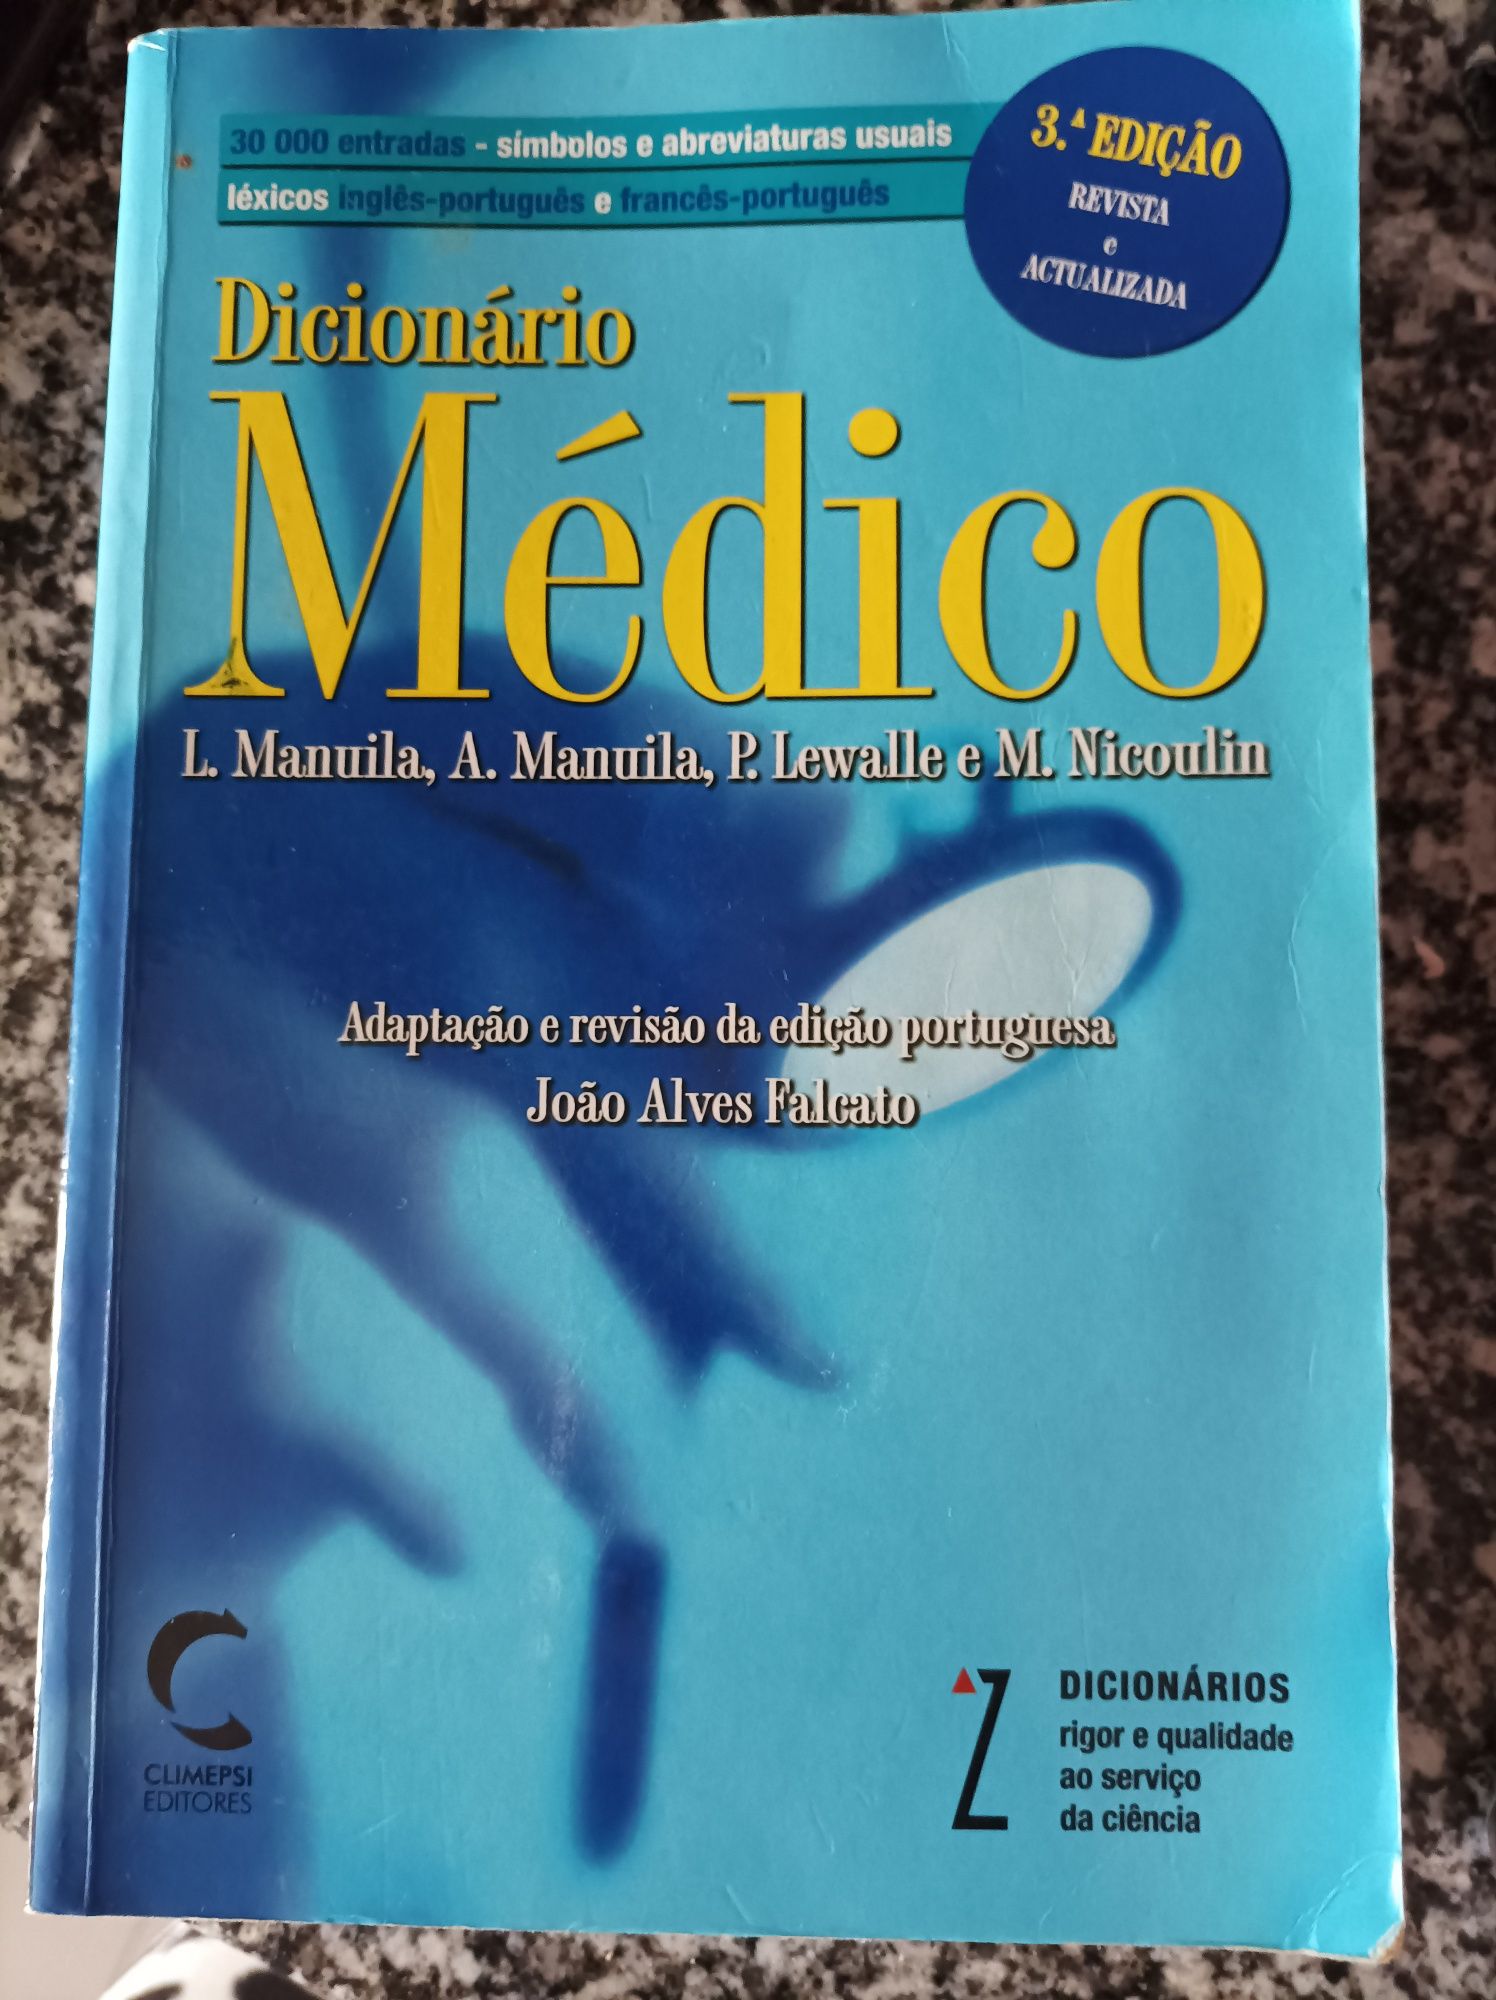 Livro dicionário médico